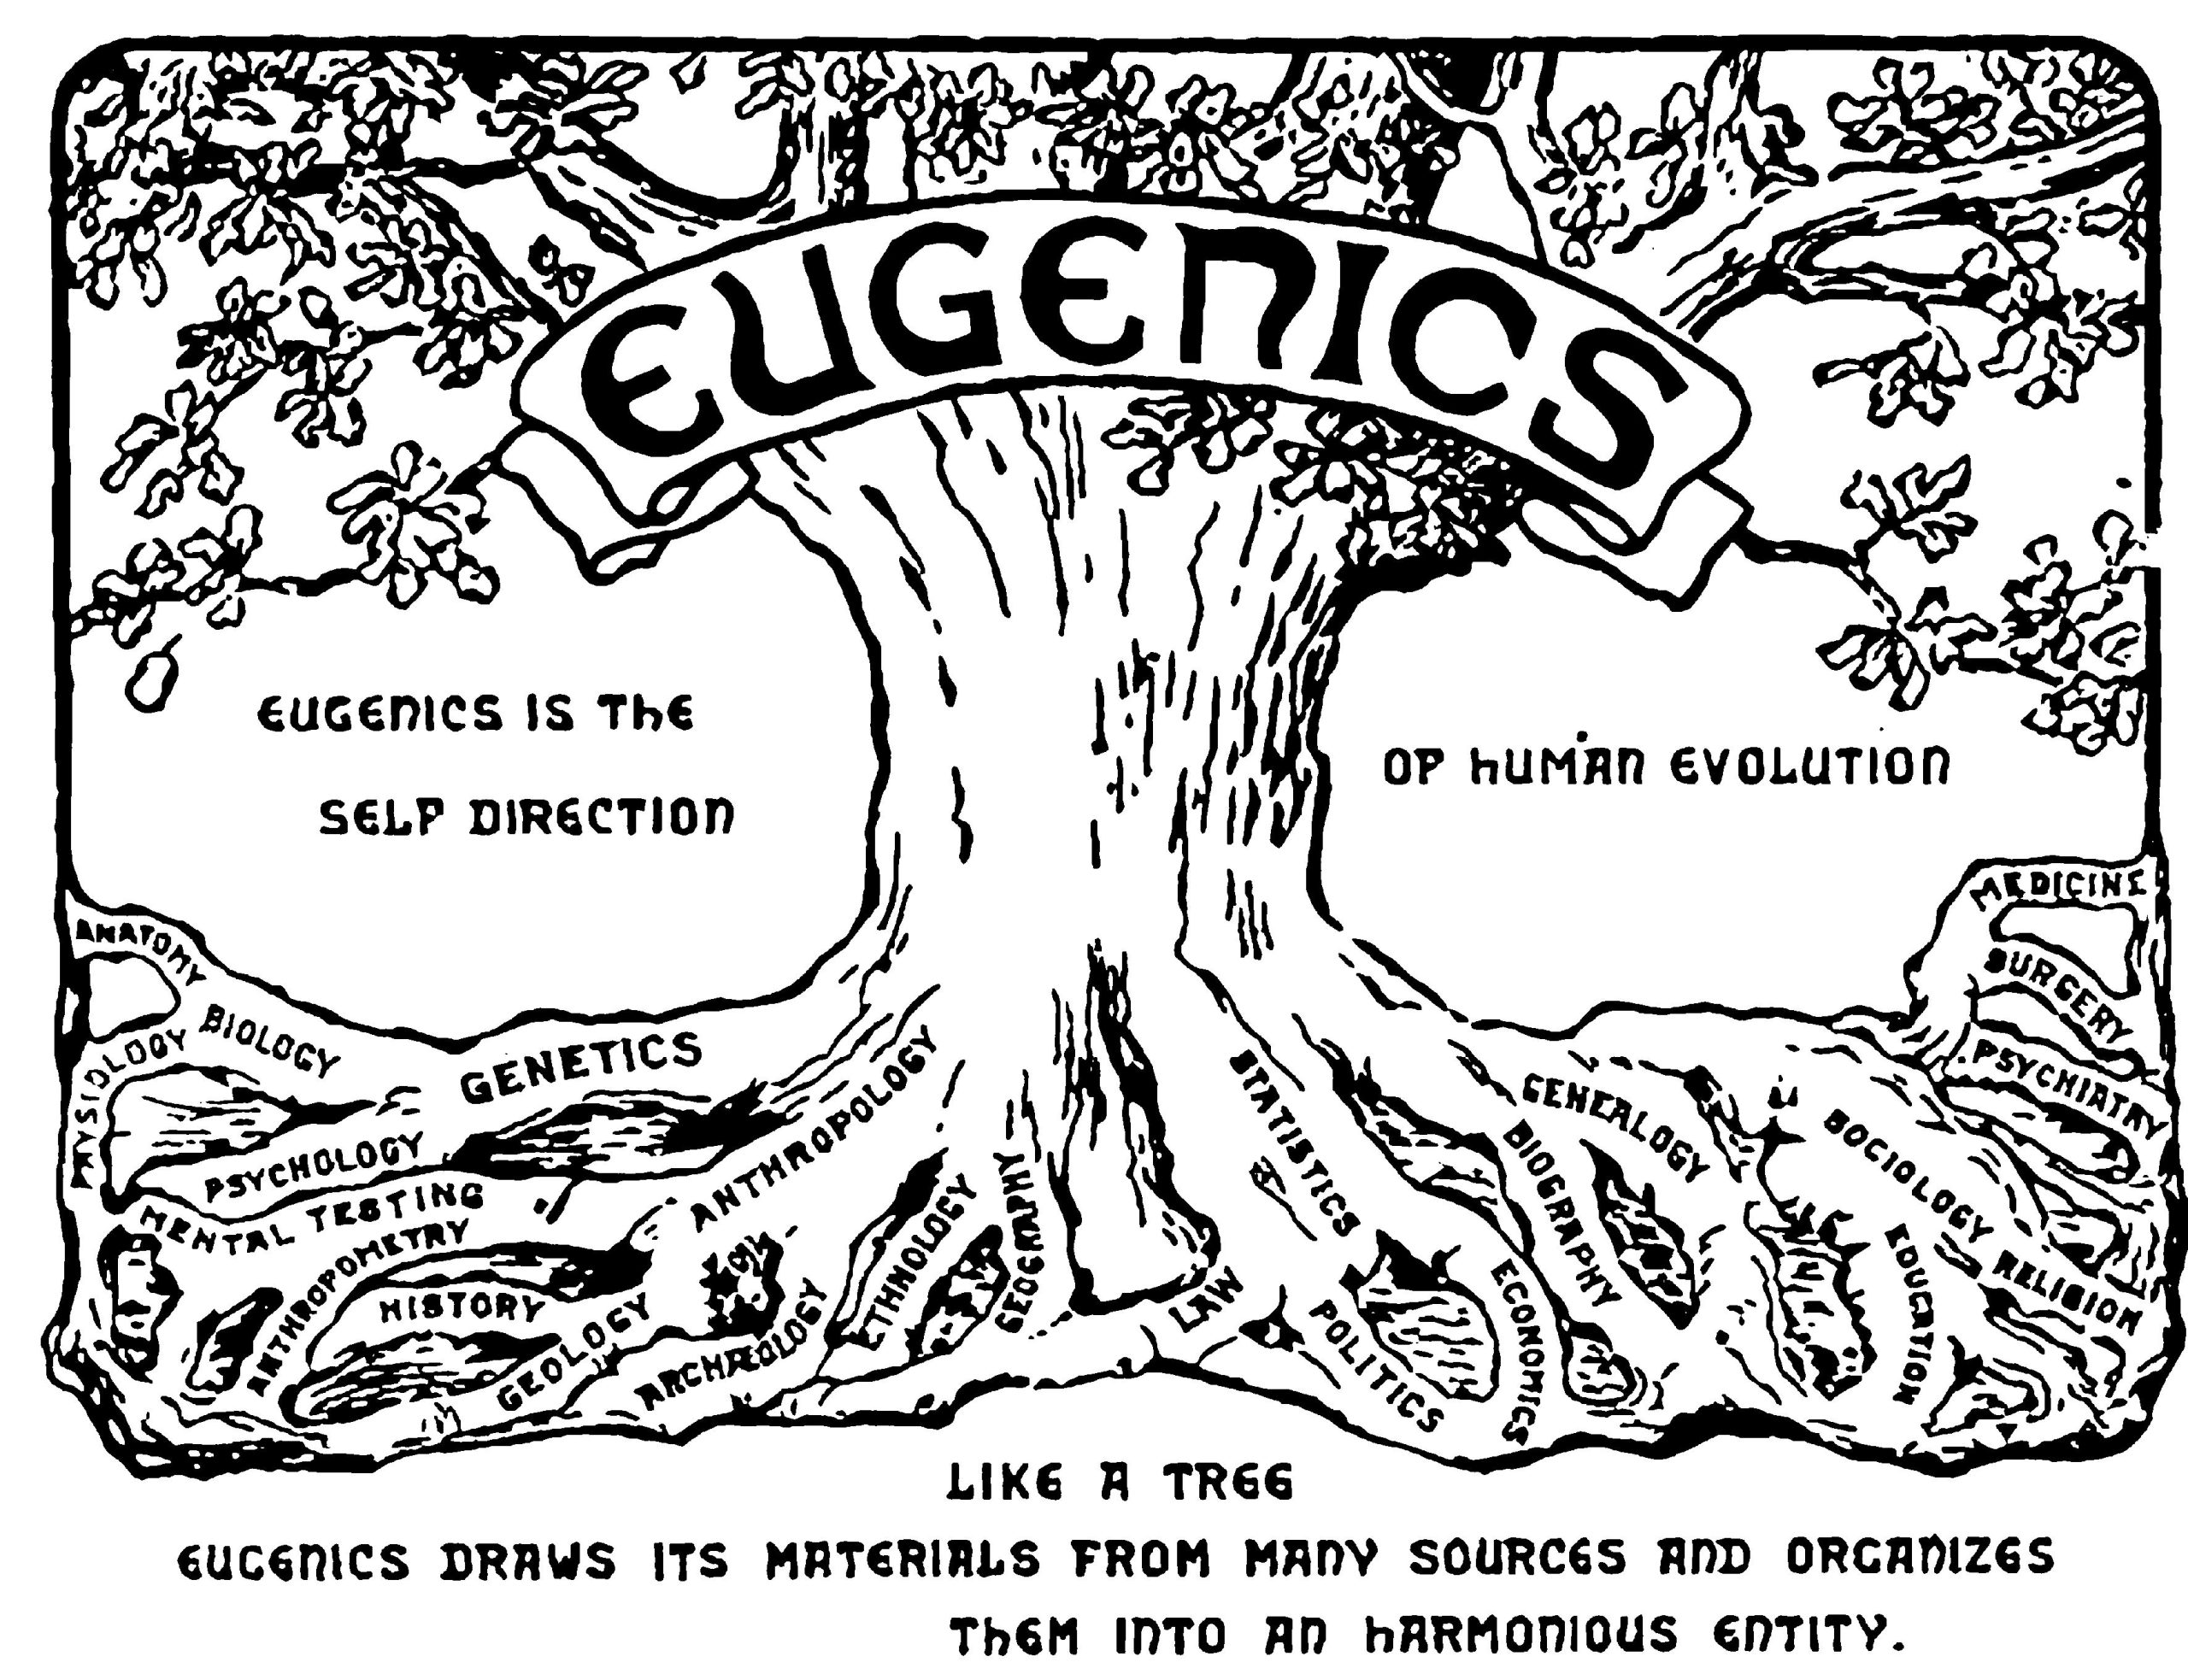 Bilden visar en ritning av ett träd med budskapet: Eugenik är den rätta vägen till människans evolution, precis som ett träd hittar eugenik sin näring från många olika källor och organiserar dem till harmoni. Rötterna, det vill säga källorna, på trädet består av olika vetenskaper till exempel genetik, statistik, psykologi, biologi, medicin med mera.